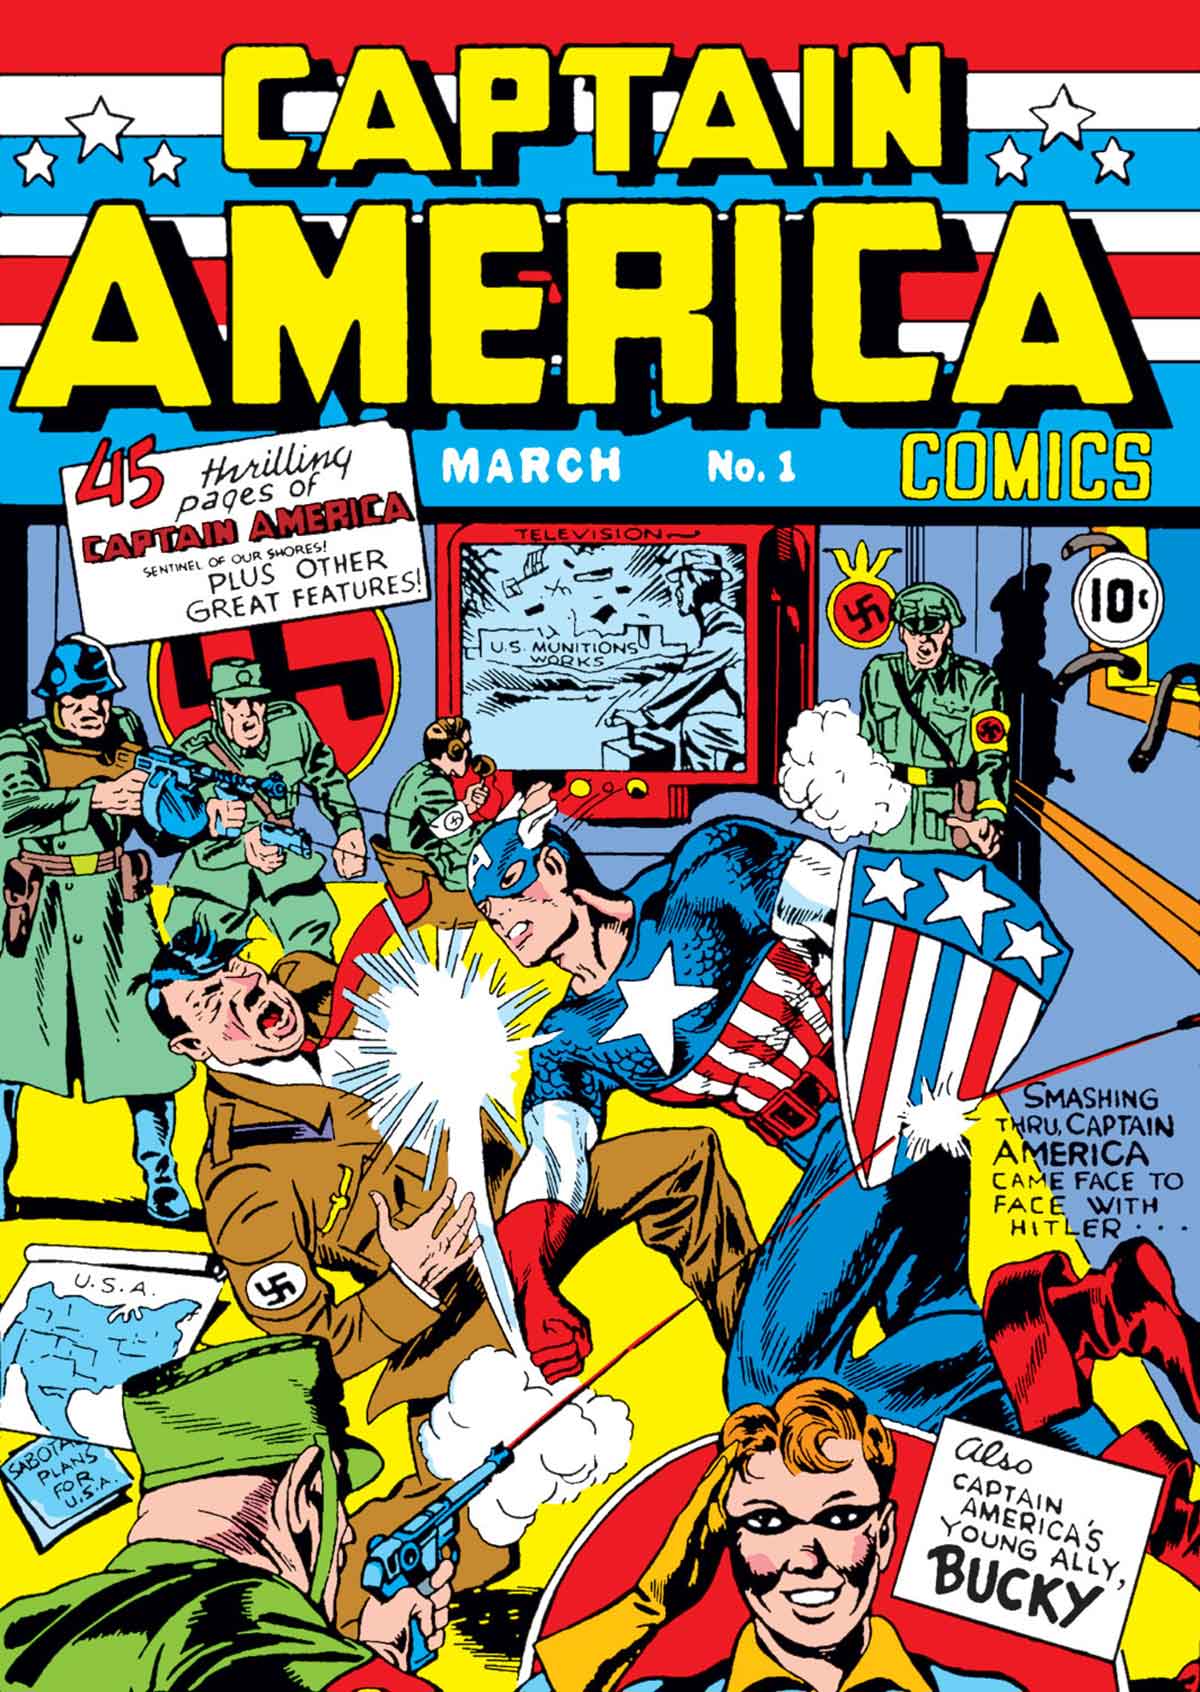 El Capitán América fue "el primer superhéroe habilitado para matar en nombre de la Constitución", dice Morrison en su libro